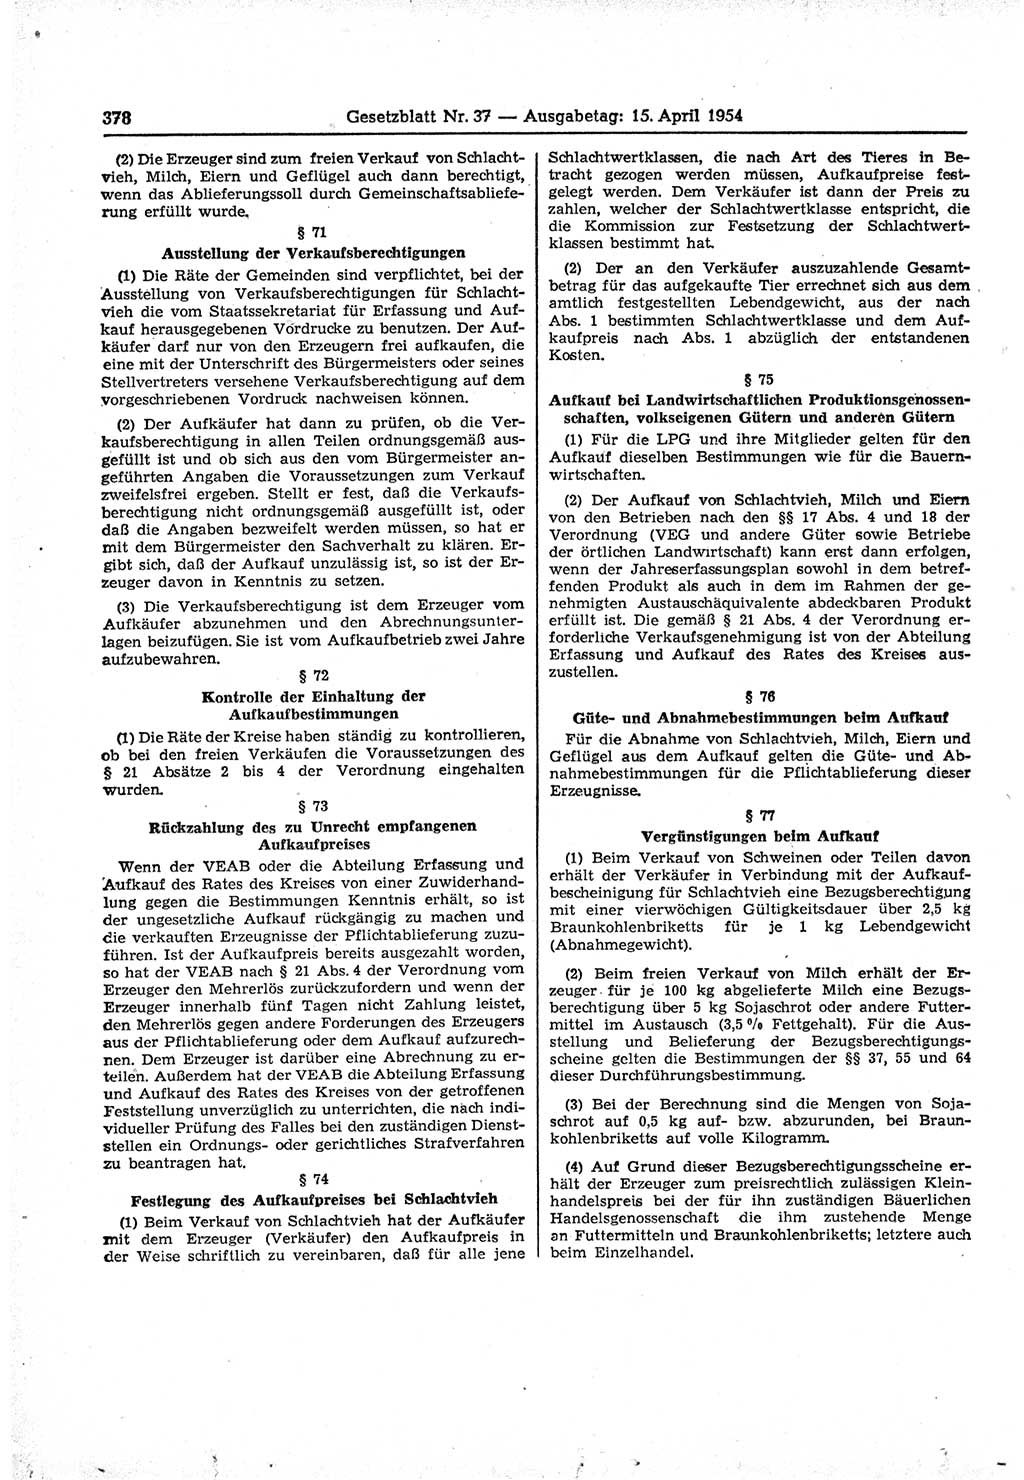 Gesetzblatt (GBl.) der Deutschen Demokratischen Republik (DDR) 1954, Seite 378 (GBl. DDR 1954, S. 378)